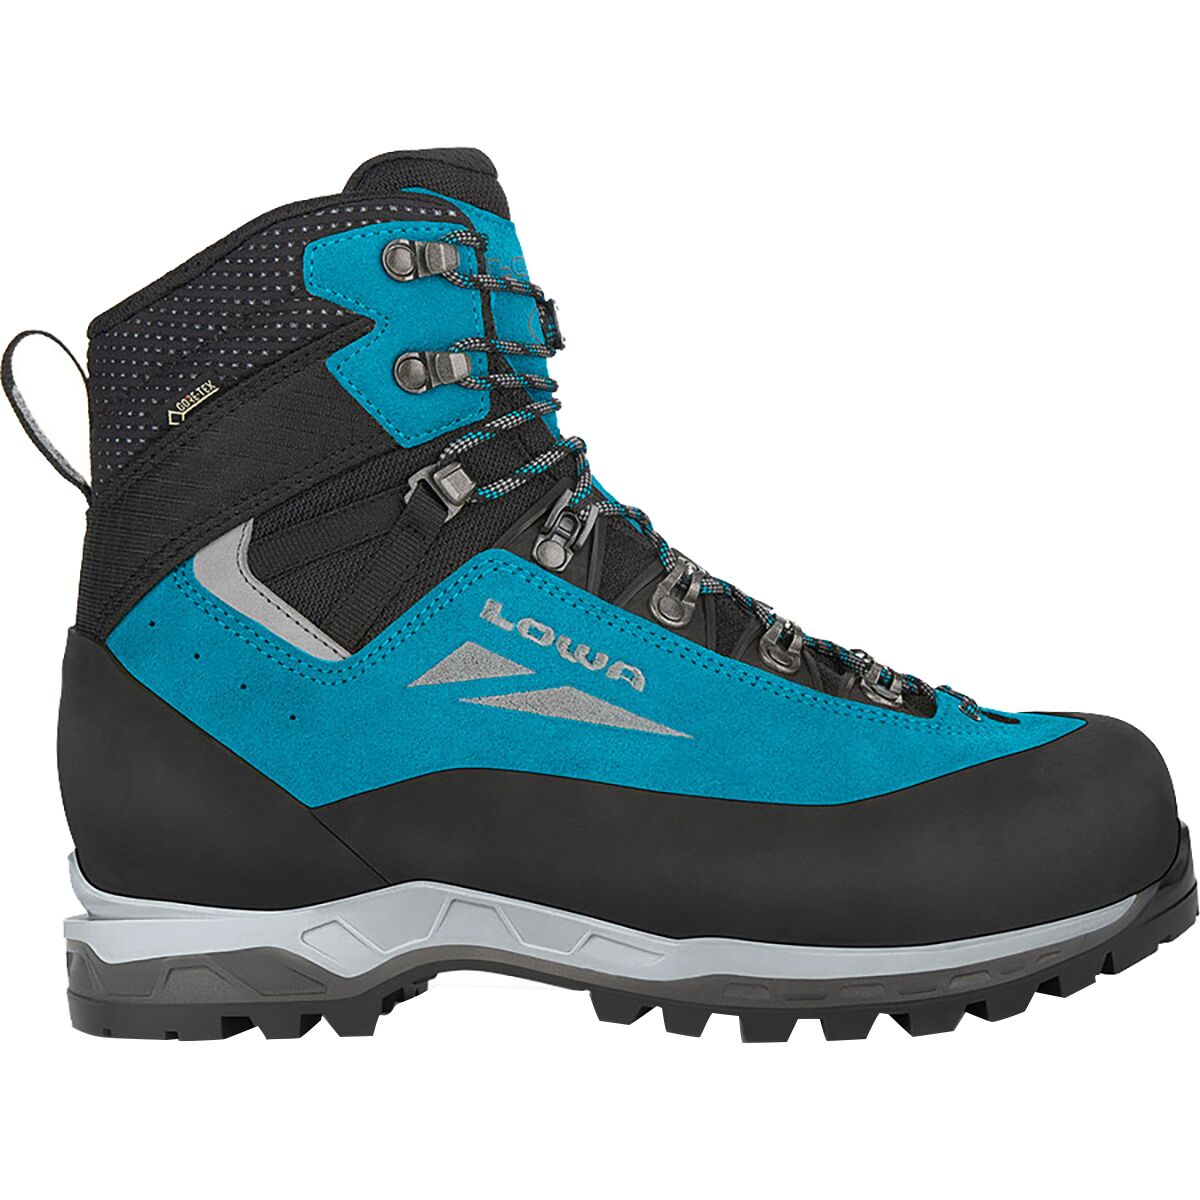 Lowa Cevedale Evo GTX Mountaineering Boot - Women's